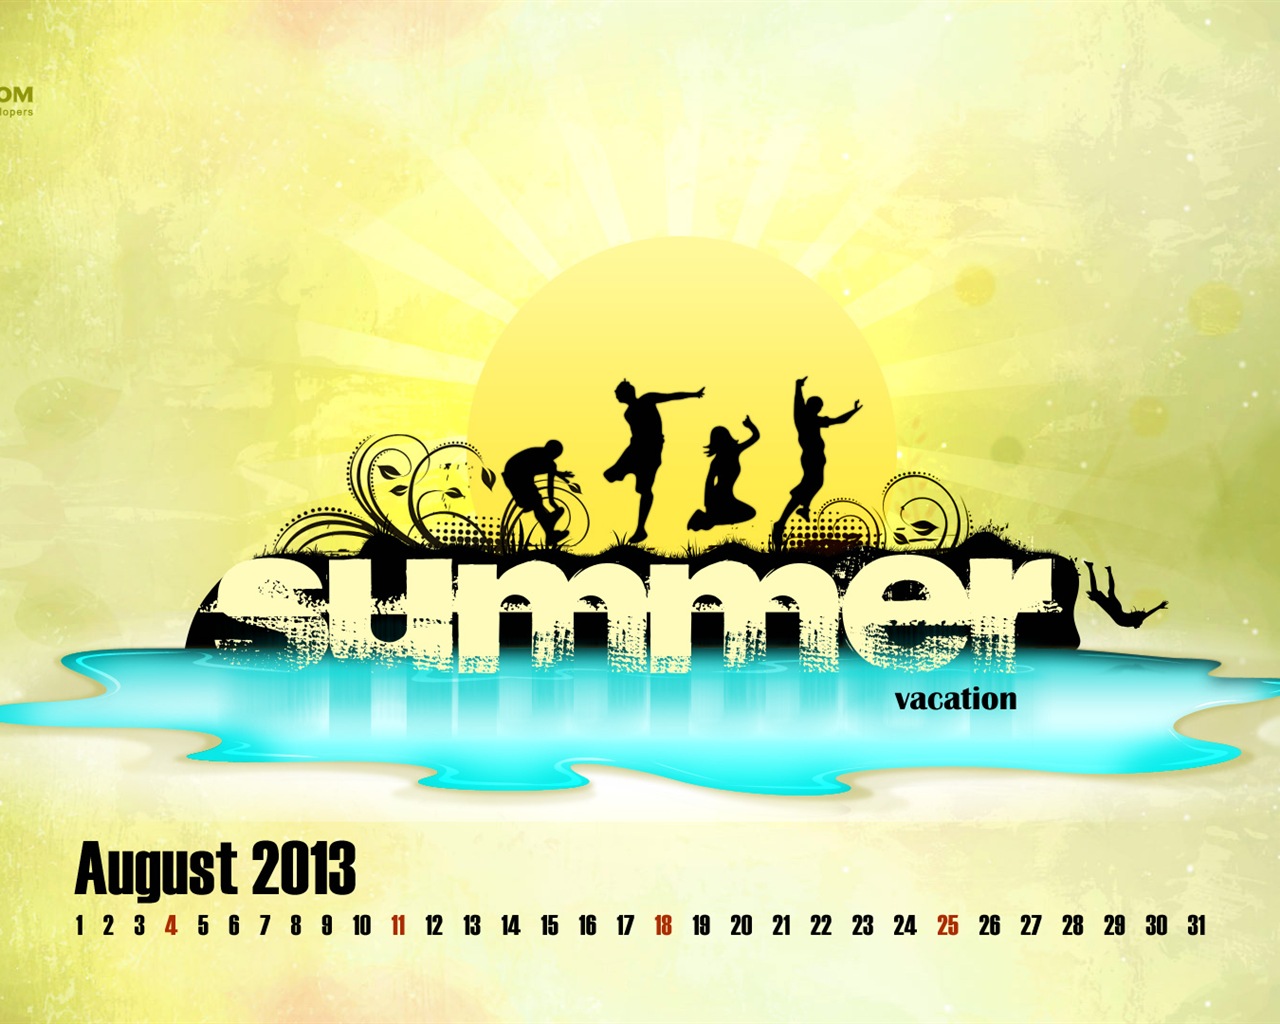 August 2013 calendar wallpaper (2) #20 - 1280x1024